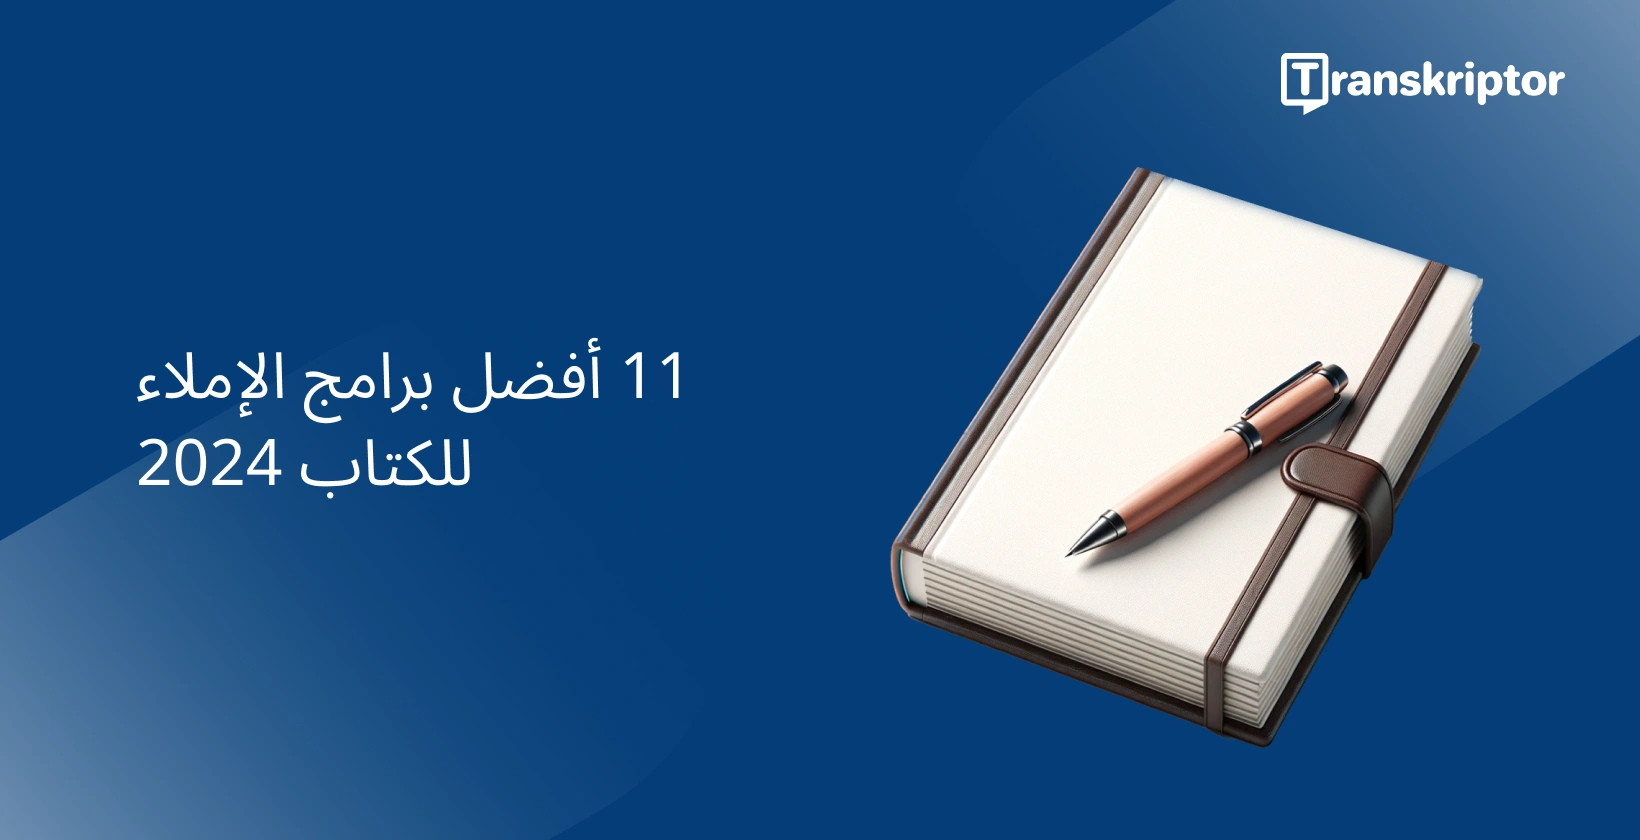 برنامج الإملاء للكتاب ، يظهر دفتر ملاحظات وقلم ، يرمز إلى أدوات الكتابة.